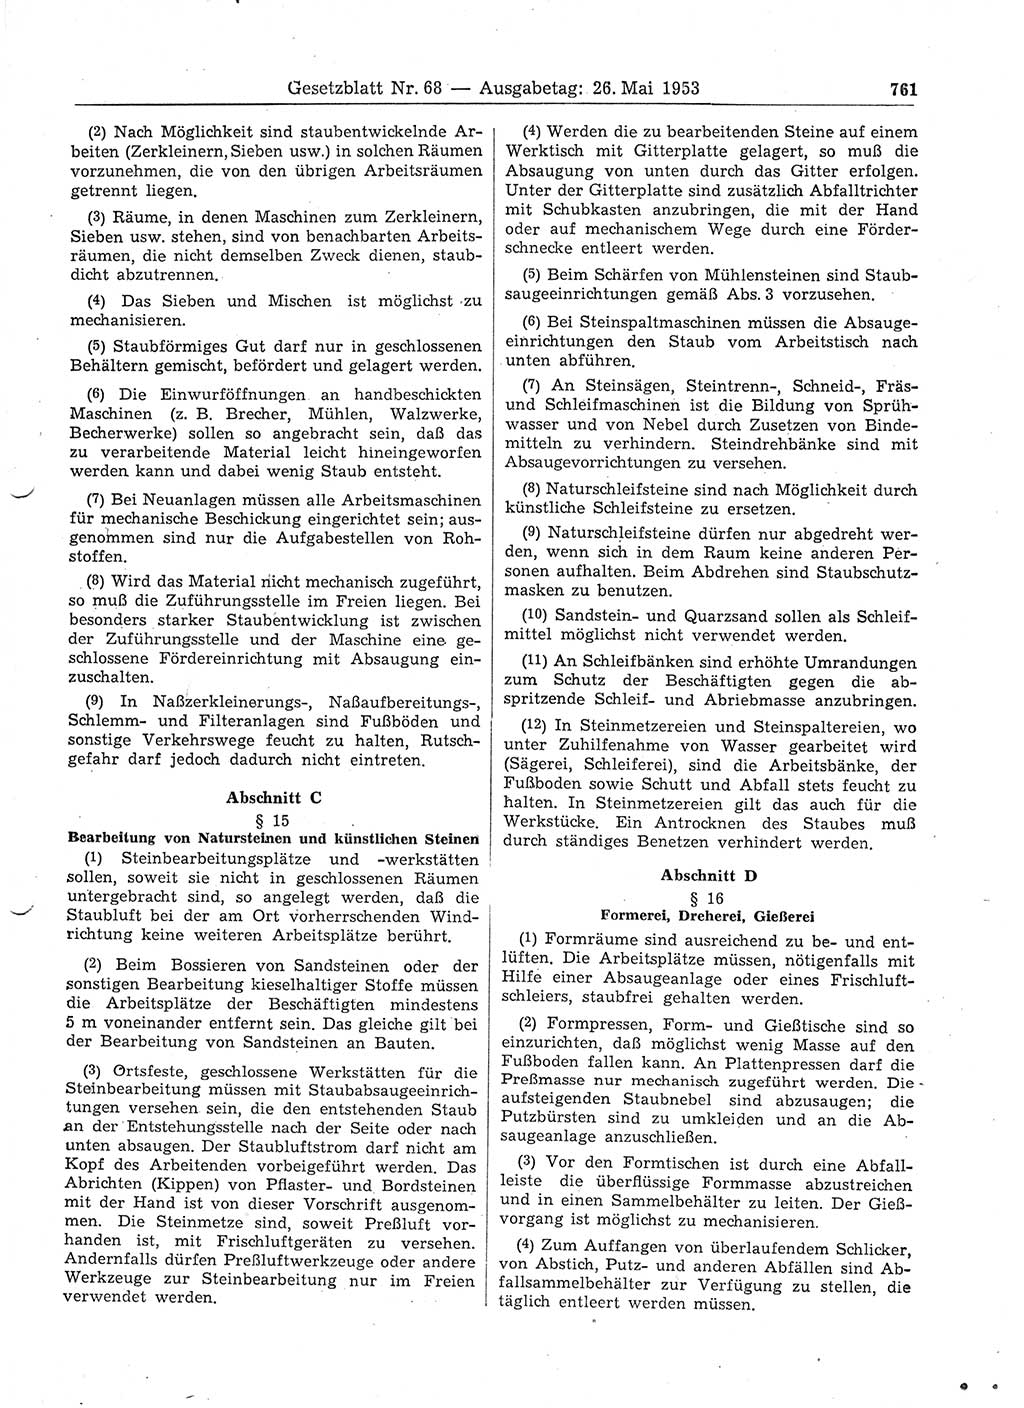 Gesetzblatt (GBl.) der Deutschen Demokratischen Republik (DDR) 1953, Seite 761 (GBl. DDR 1953, S. 761)